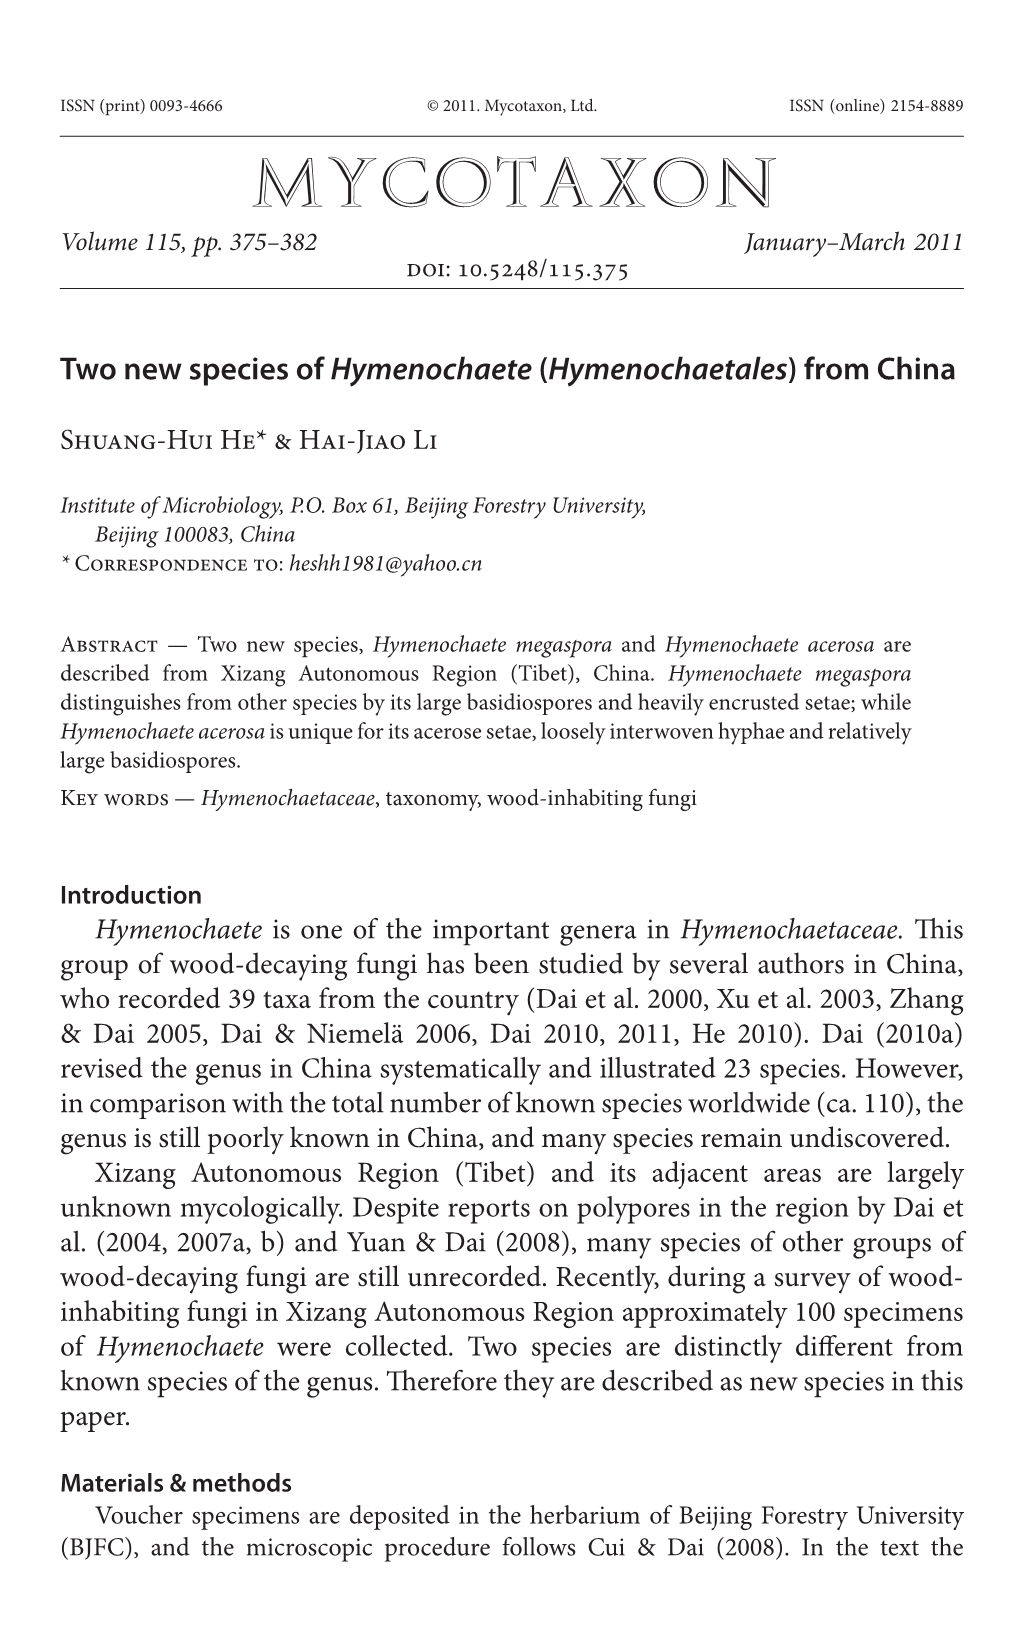 Two New Species of &lt;I&gt;Hymenochaete&lt;/I&gt; (&lt;I